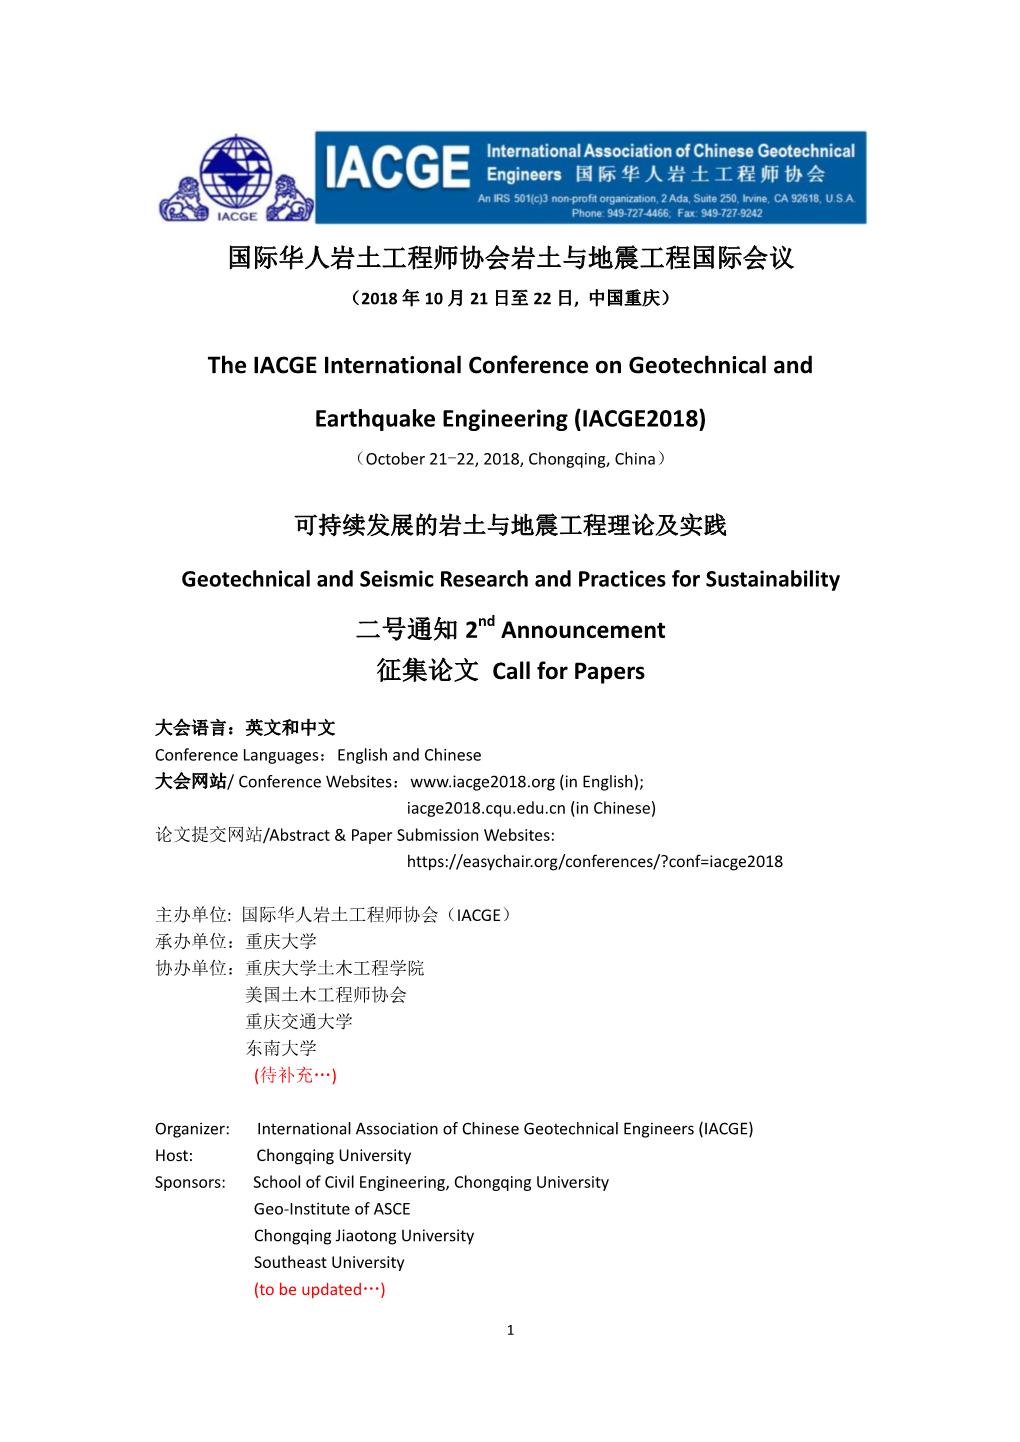 国际华人岩土工程师协会岩土与地震工程国际会议the IACGE International Conference on Geotechnical and Earthq